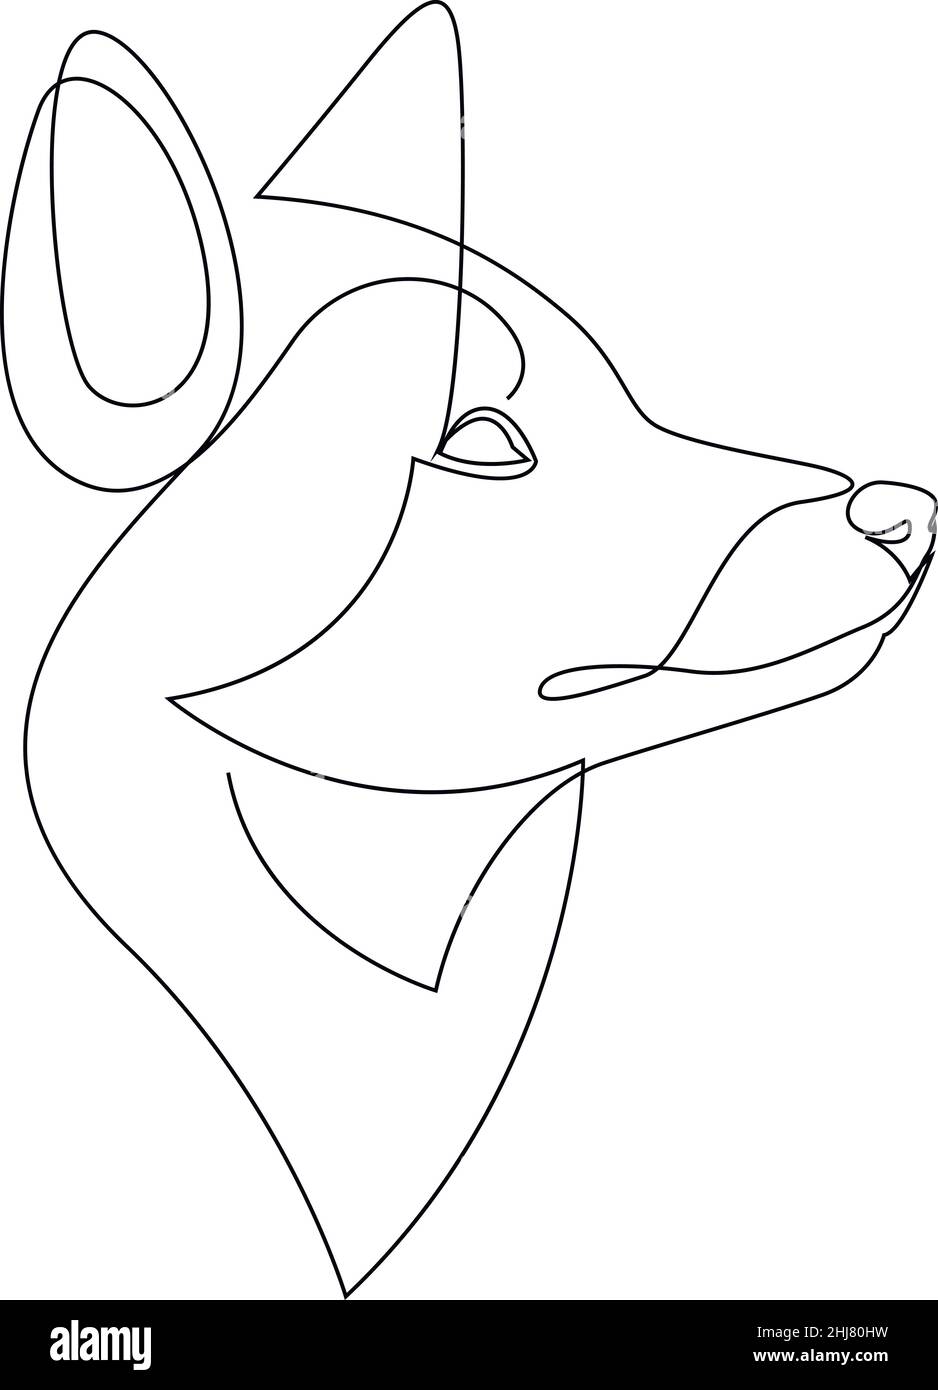 Un seul dessin de tête de renard.Animal sauvage en hiver isolé sur fond blanc.Fox mascotte concept pour le style minimaliste de l'icône du zoo national. Illustration de Vecteur